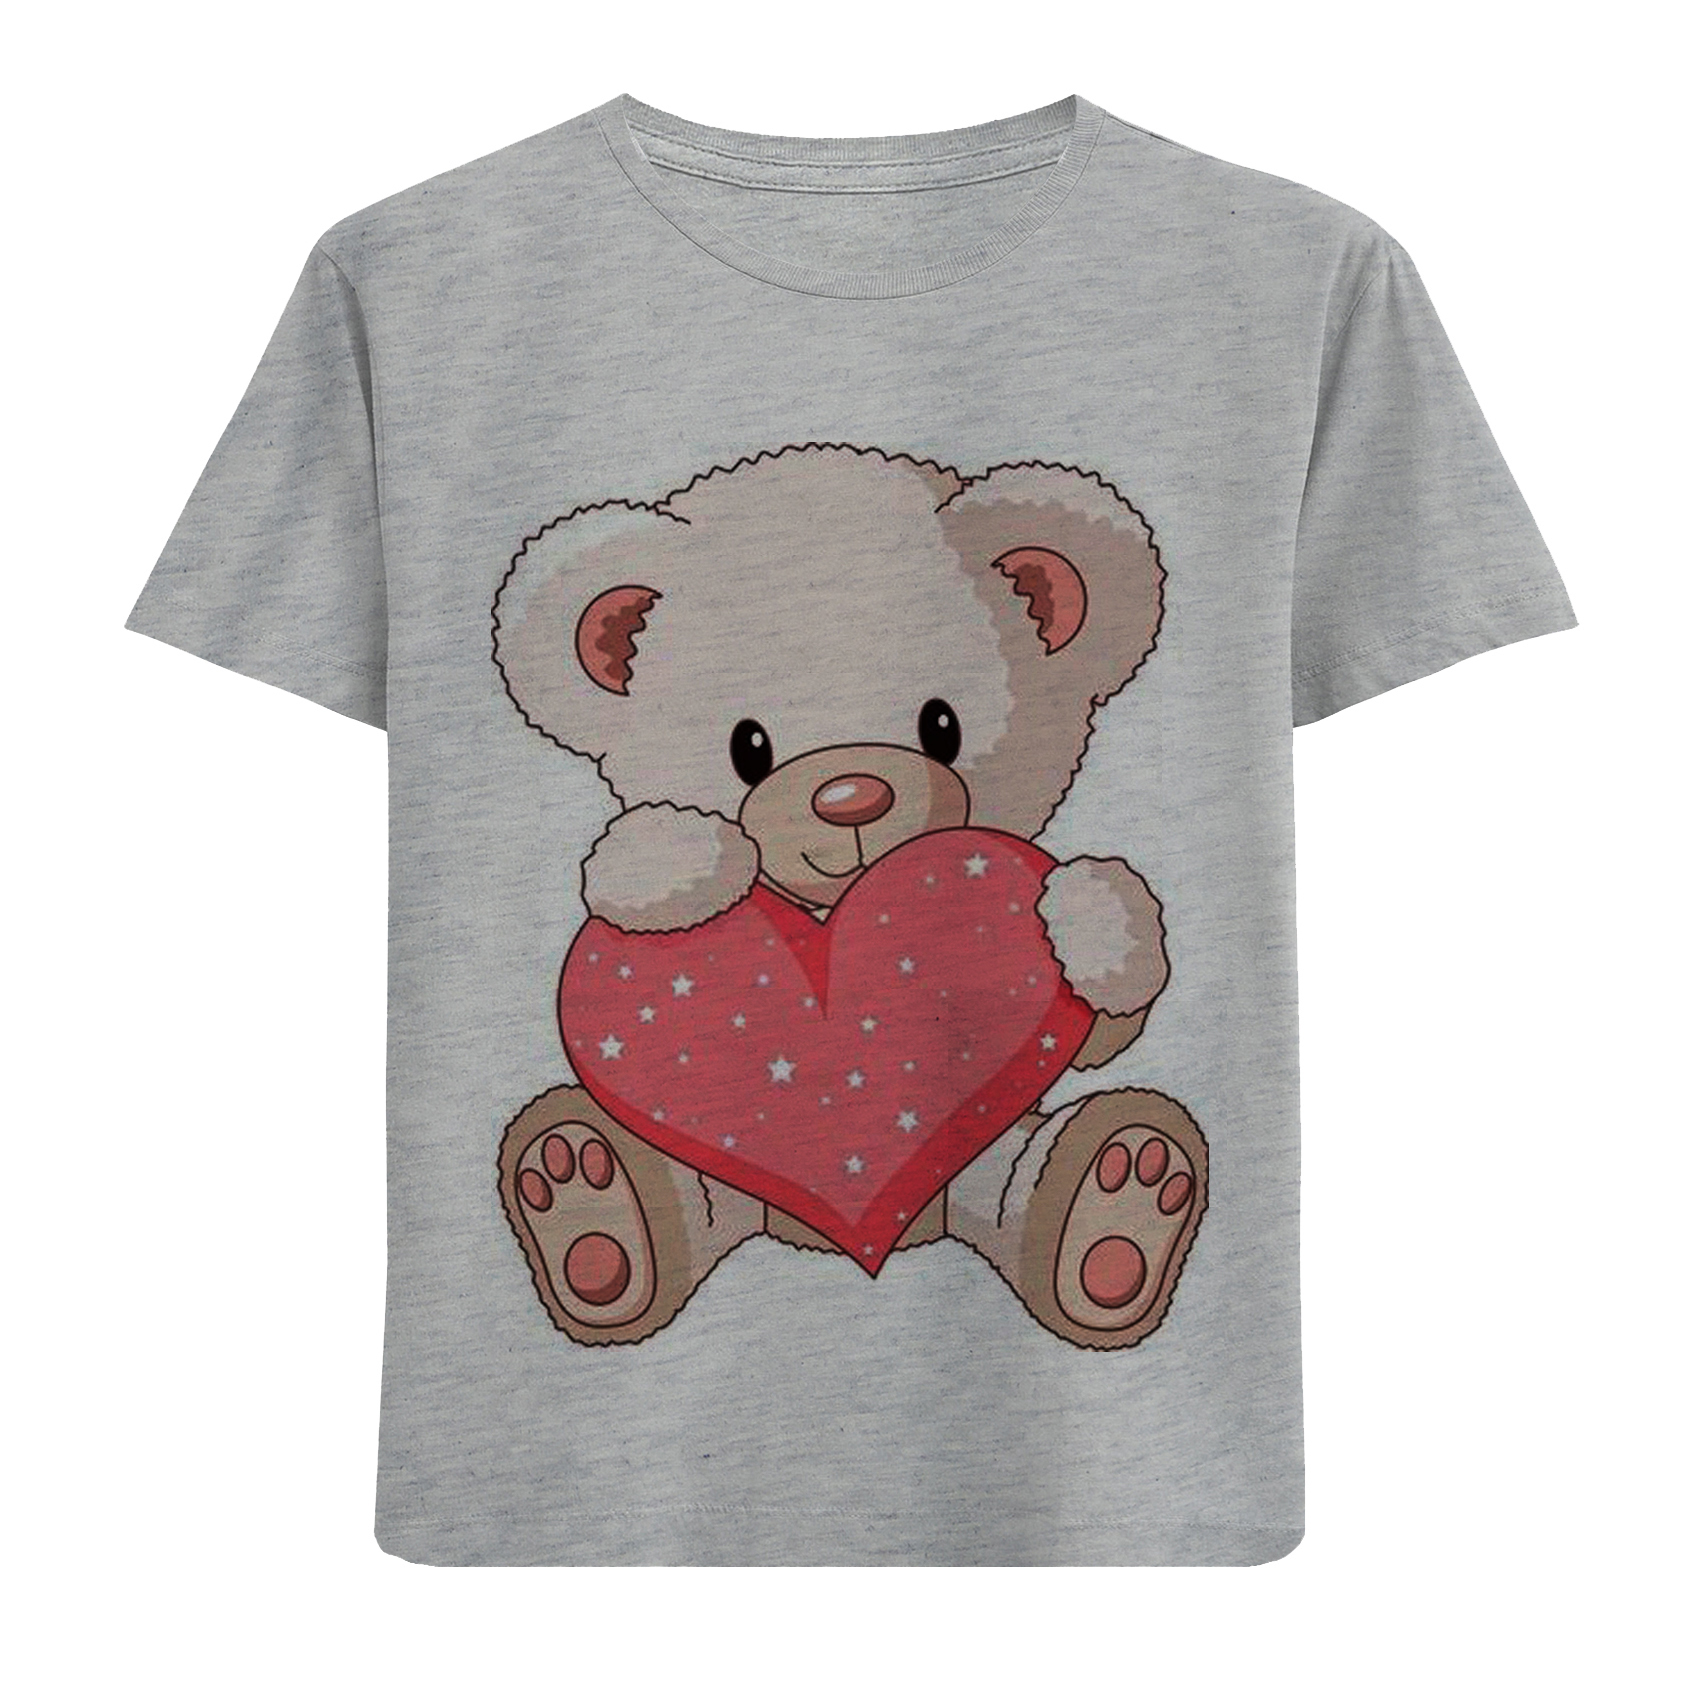 تی شرت آستین کوتاه دخترانه مدل خرس و قلب F561